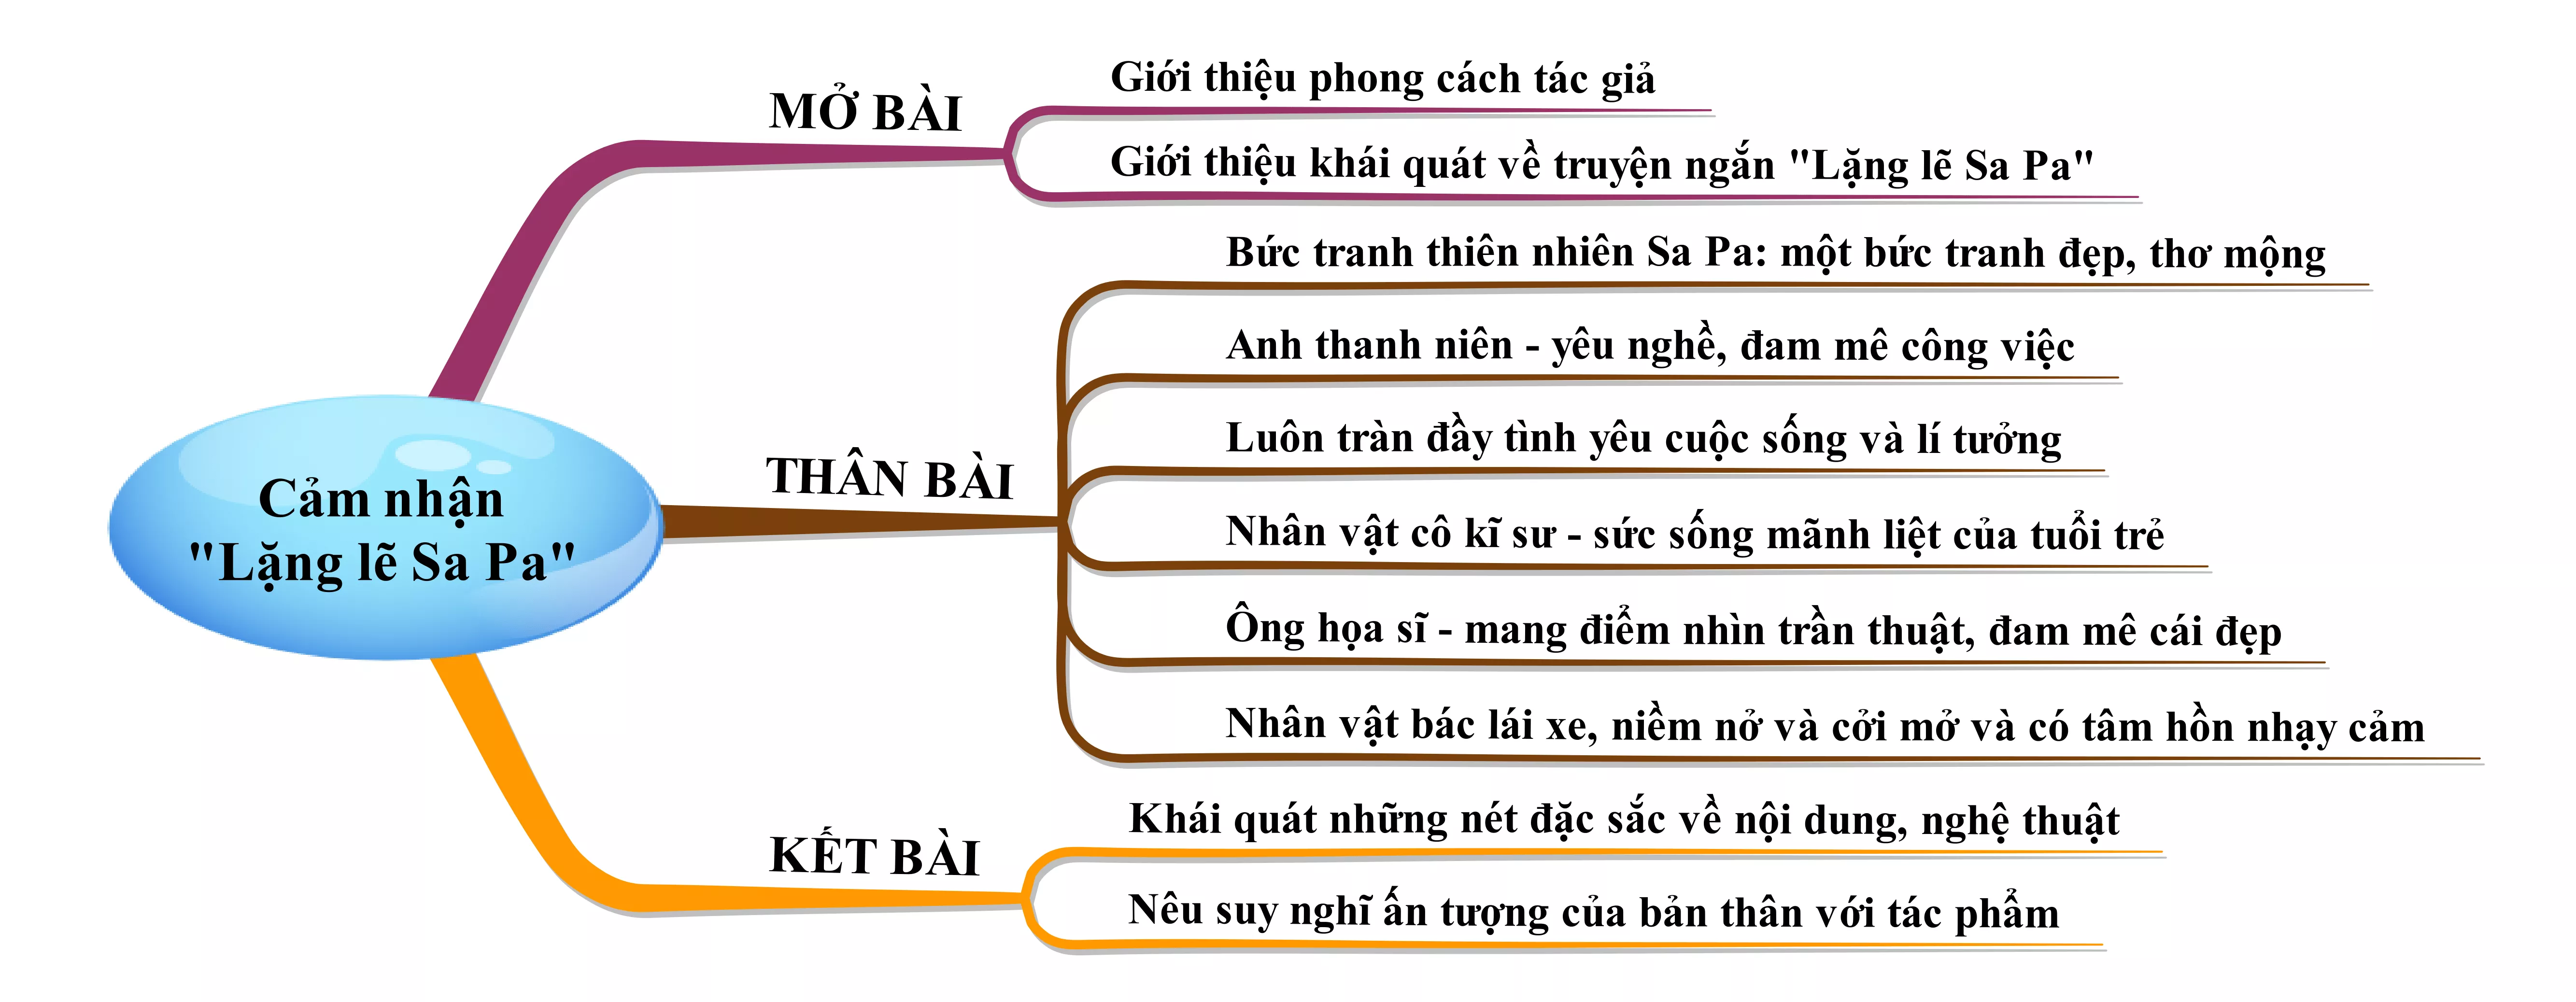 Truyện ngắn Lặng lẽ Sa Pa là một tác phẩm văn học đậm chất nhân văn và cảm động. Hãy xem hình ảnh liên quan để đắm chìm vào câu chuyện tuyệt vời của Lặng lẽ Sa Pa và tìm hiểu thêm về văn học Việt Nam.